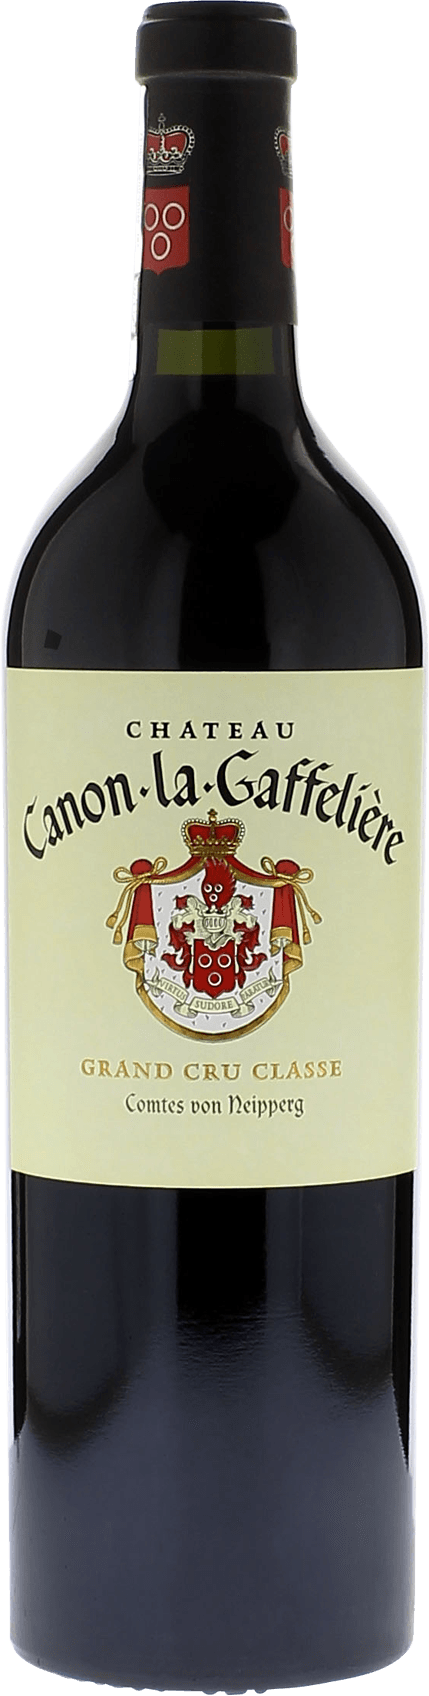 Canon la gaffeliere 2015 1er Grand cru B class Saint-Emilion Saint-Emilion, Bordeaux rouge